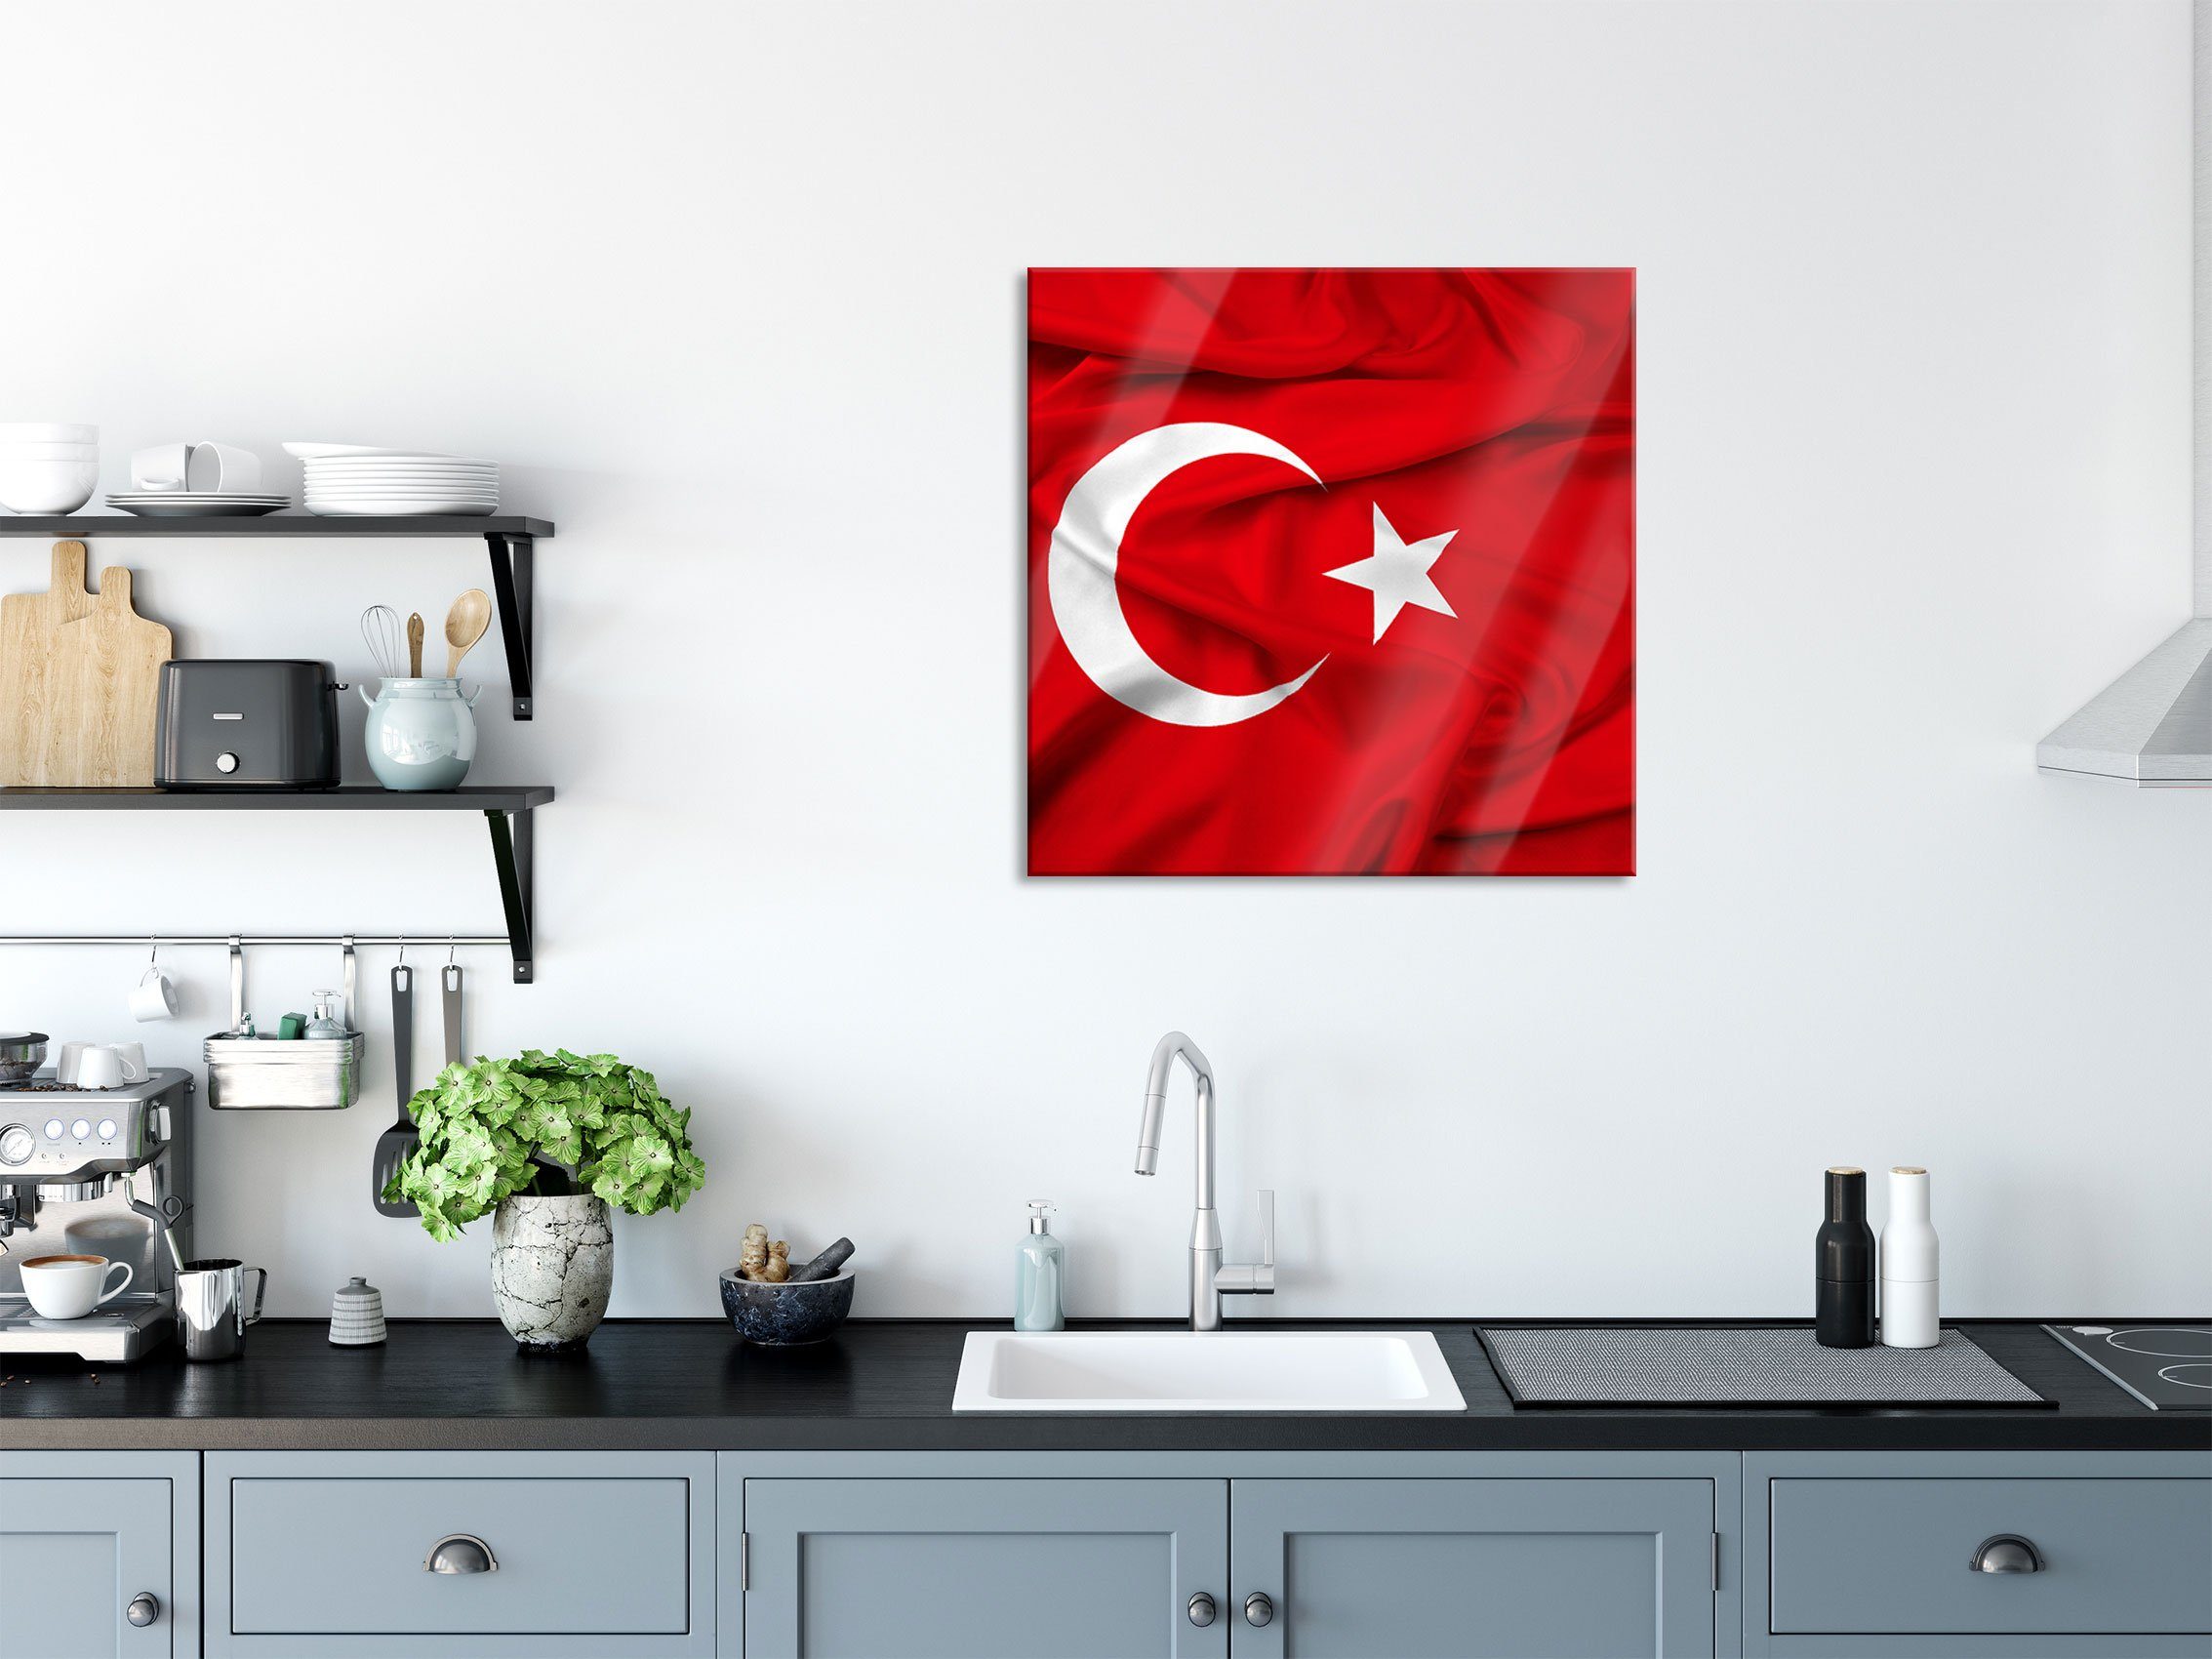 Pixxprint Glasbild Turkey flag Glasbild Flagge inkl. Türkei Flagge, aus Echtglas, St), Abstandshalter Aufhängungen Türkei flag Turkey und (1